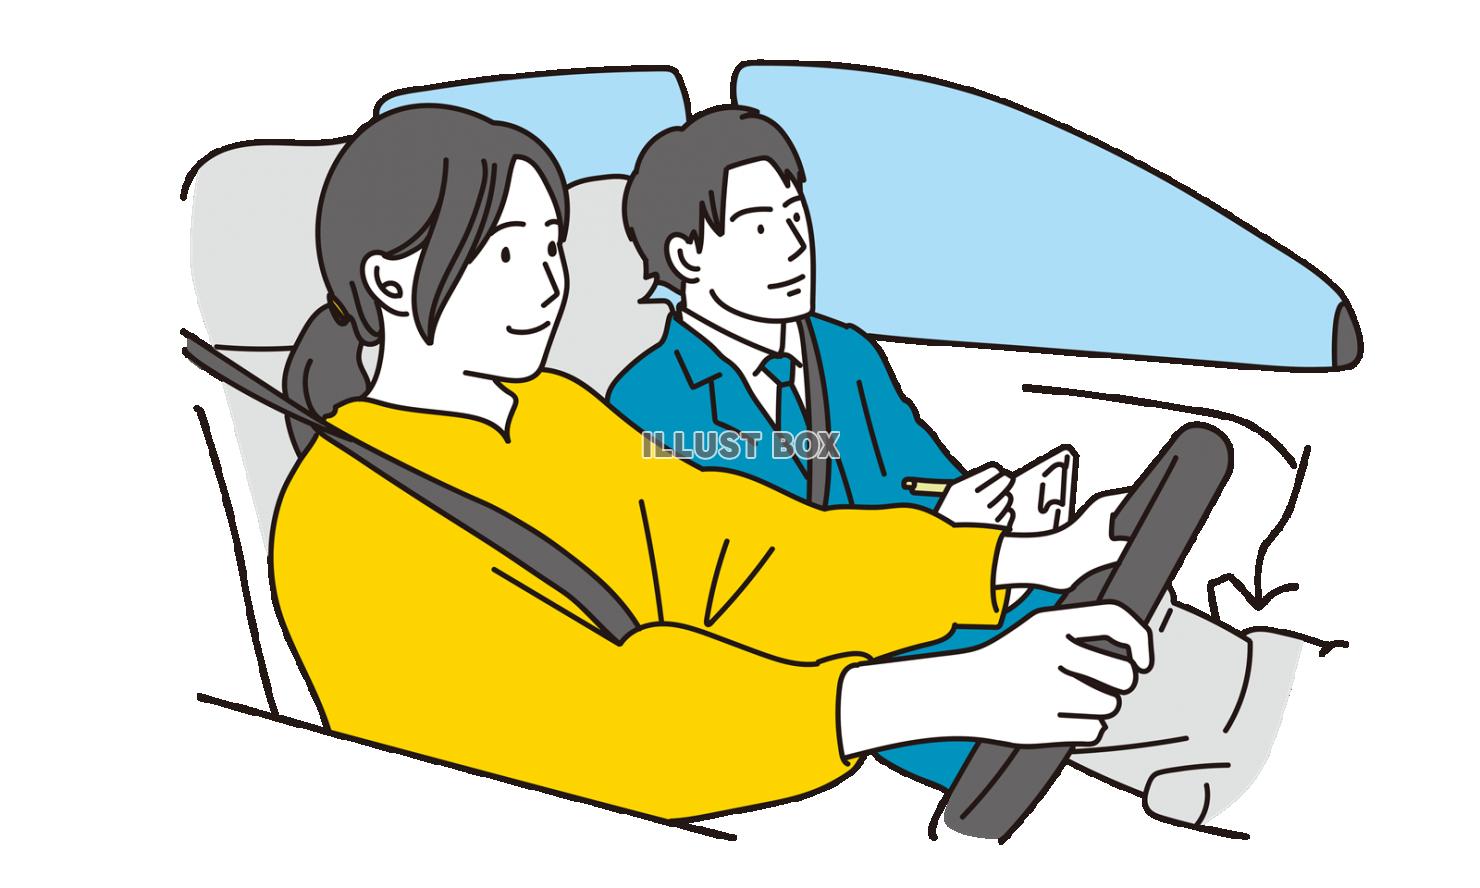 車の運転の教習を受ける女性